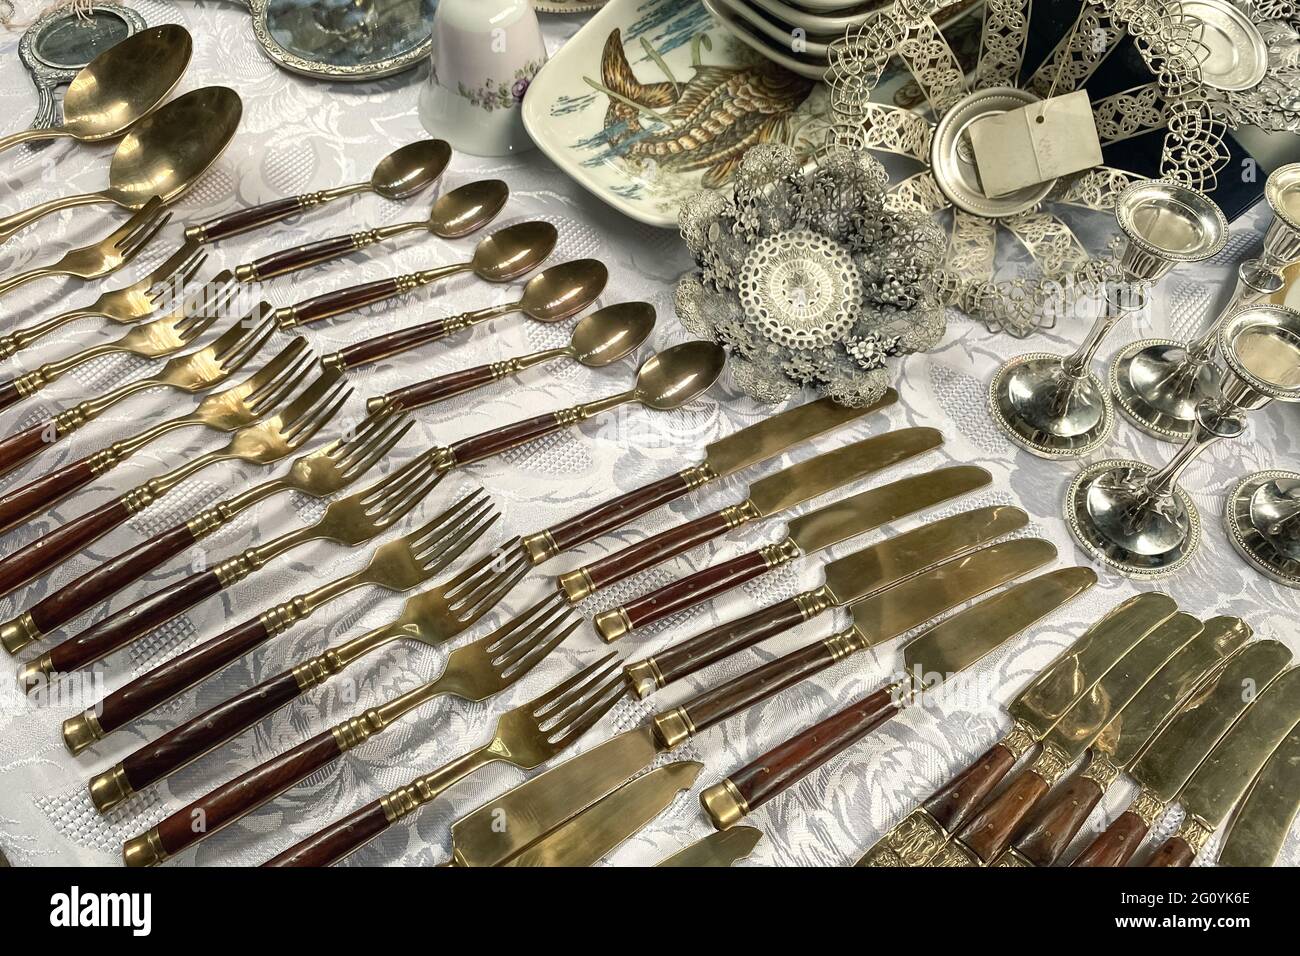 Antiquariato sul mercato delle pulci, posate d'argento vintage - cucchiai, coltelli, forchette e altre cose d'epoca. Cimeli da collezione e concetto di vendita garage Foto Stock